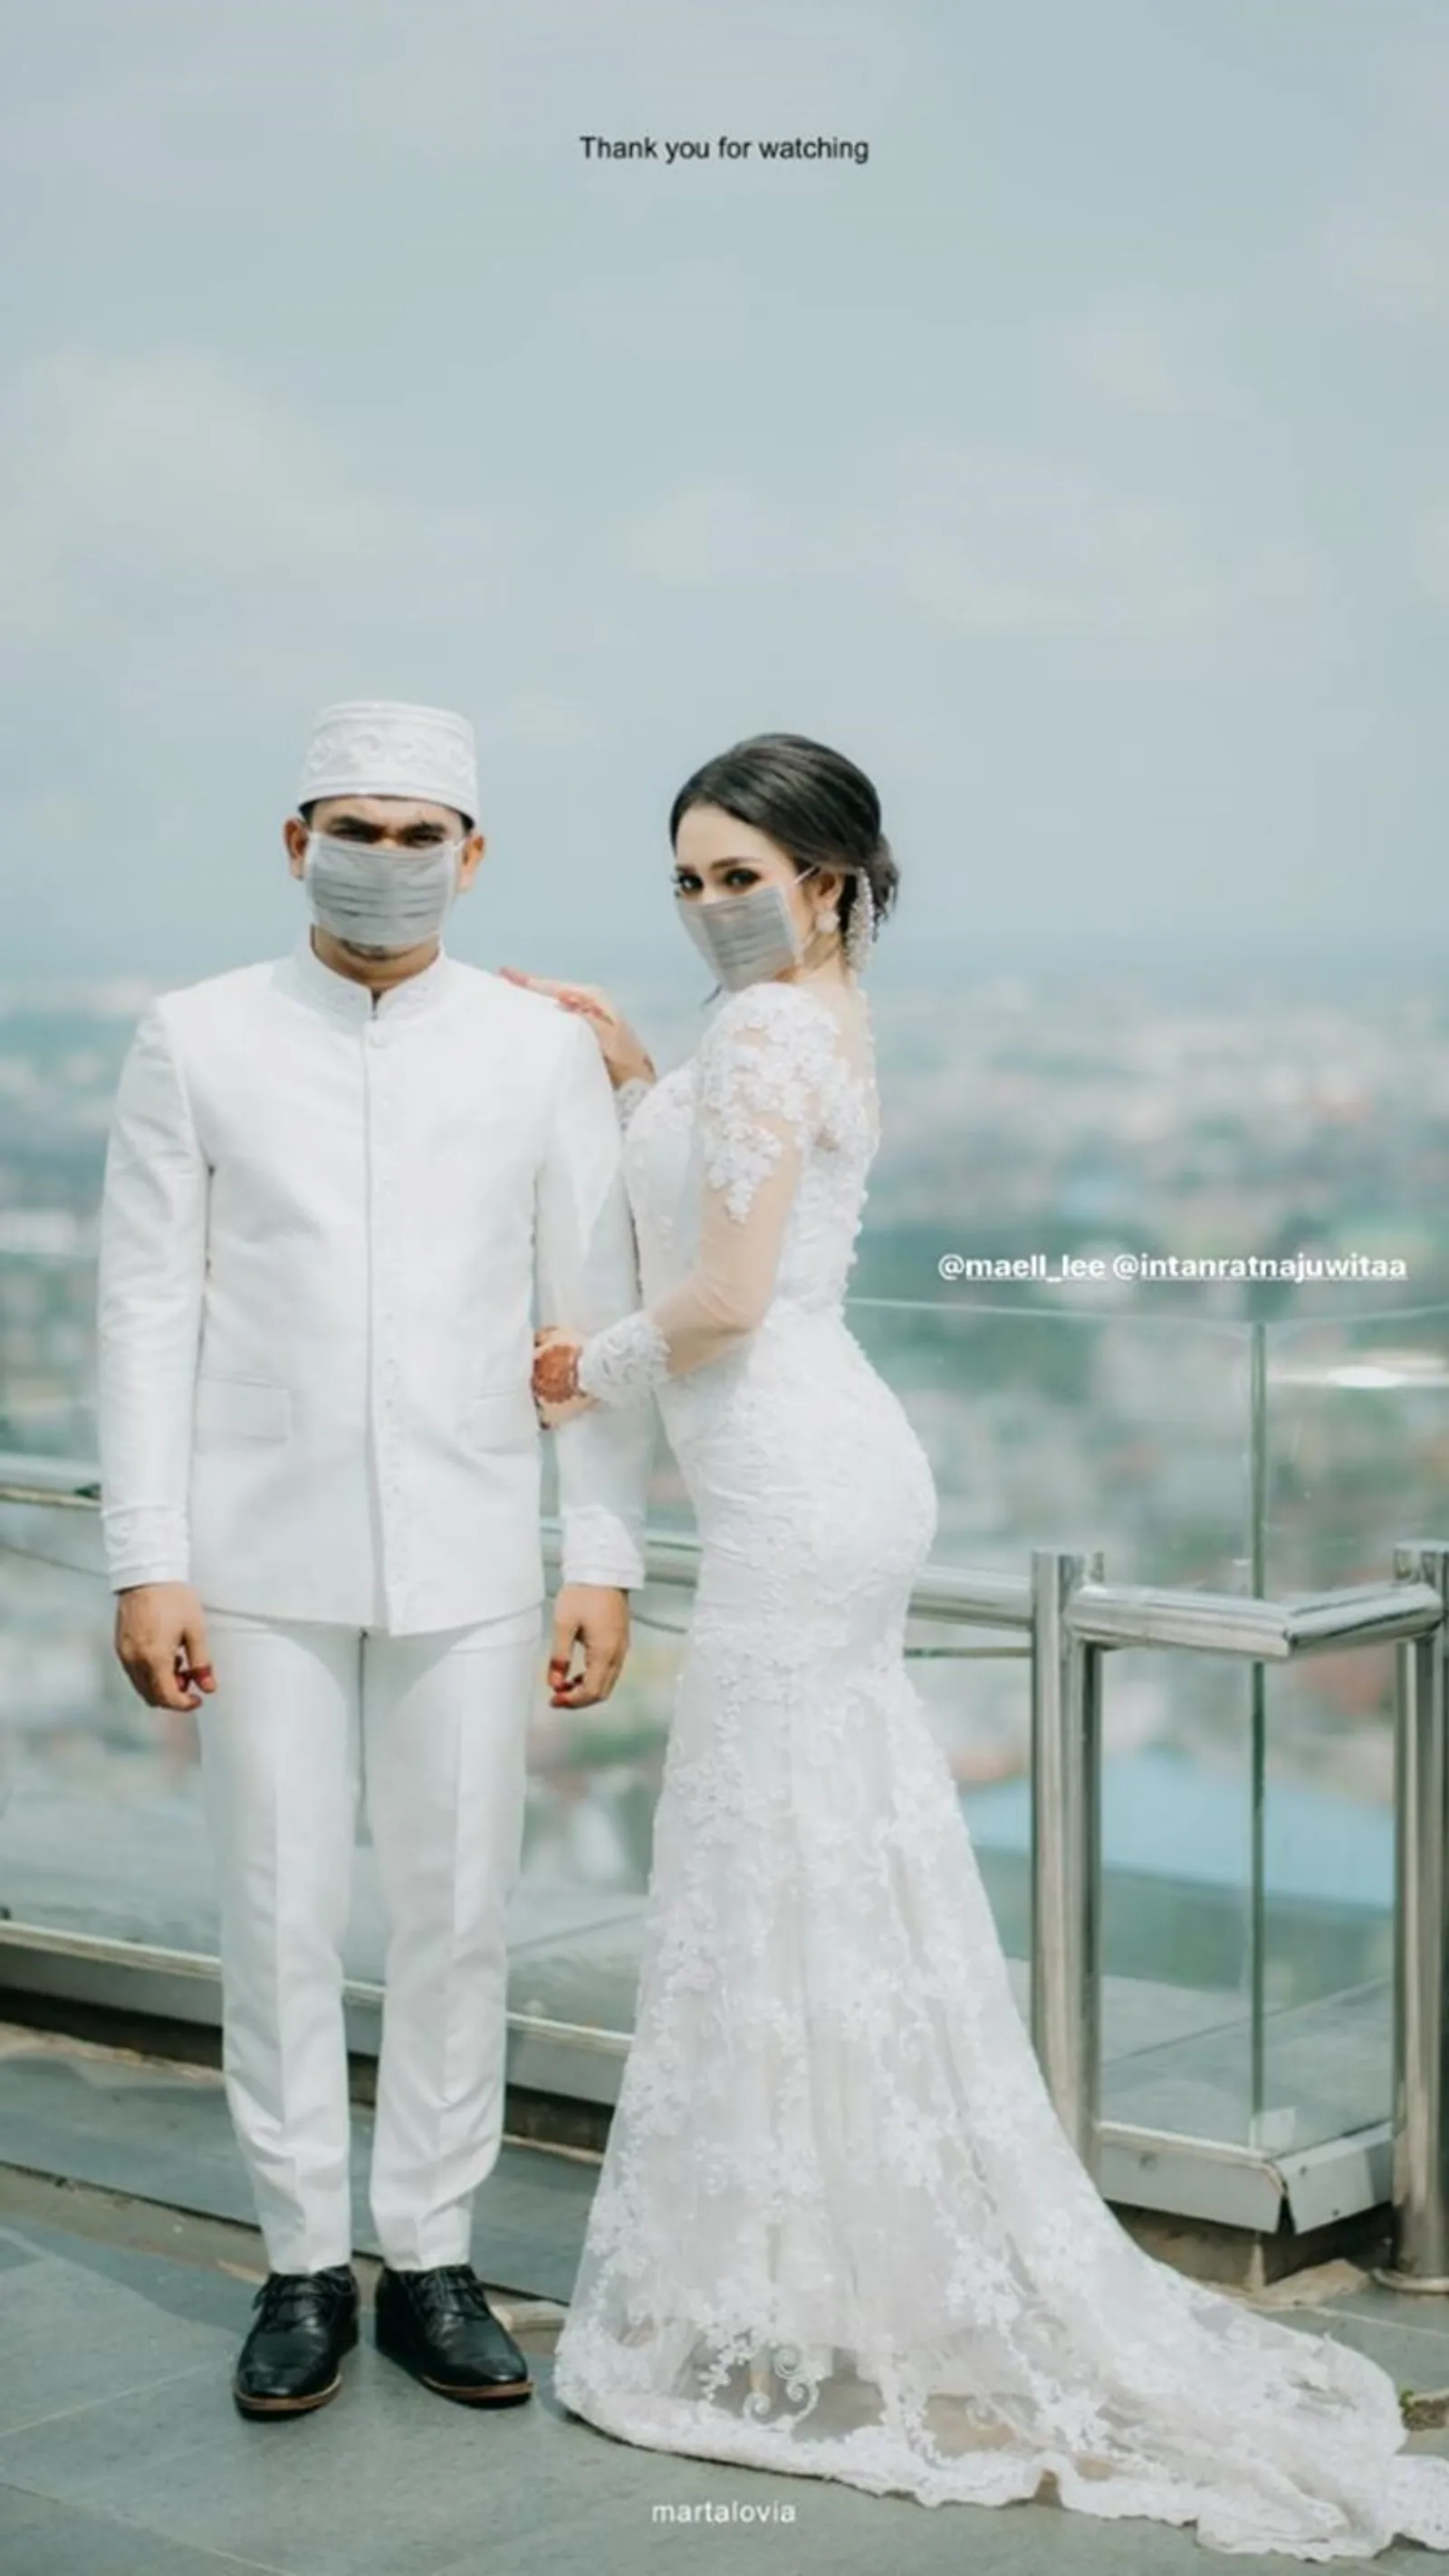 10 Foto Pernikahan YouTuber Maell Lee di Tengah Pandemi Corona